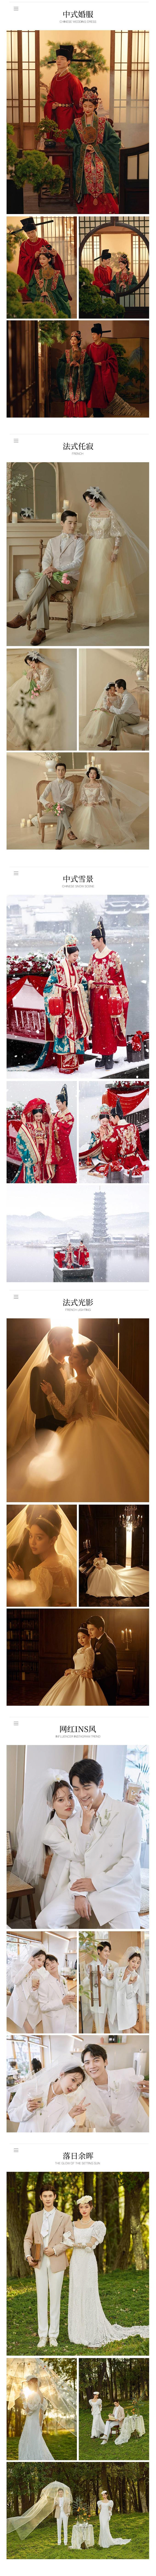 【甜蜜之旅】风格任选/每一刻都值得记录/韩式婚纱